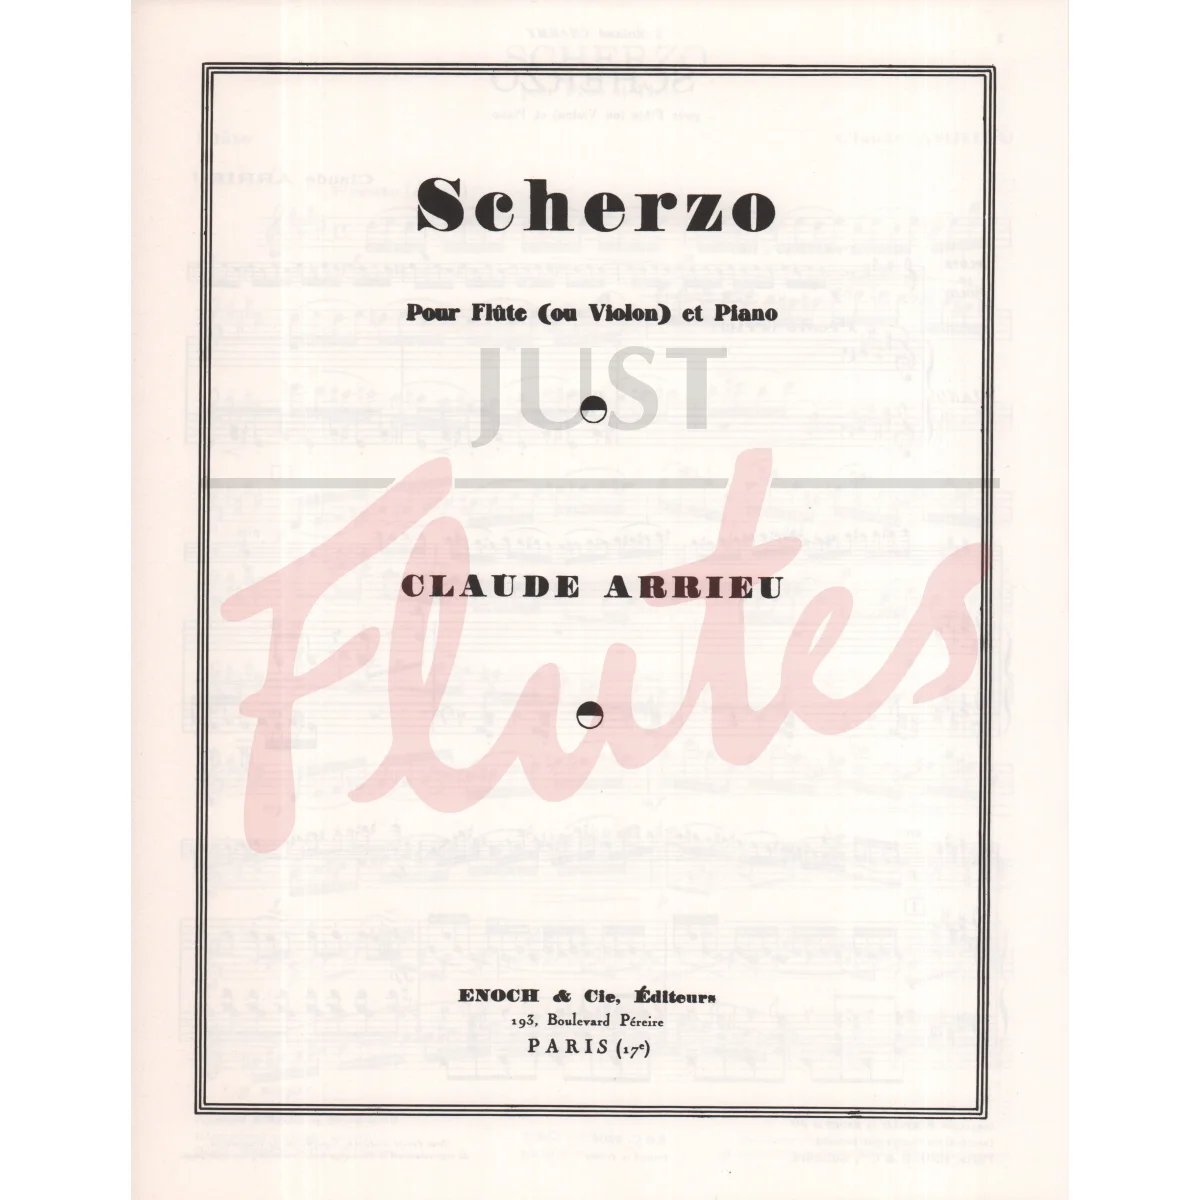 Scherzo for Flute and Piano